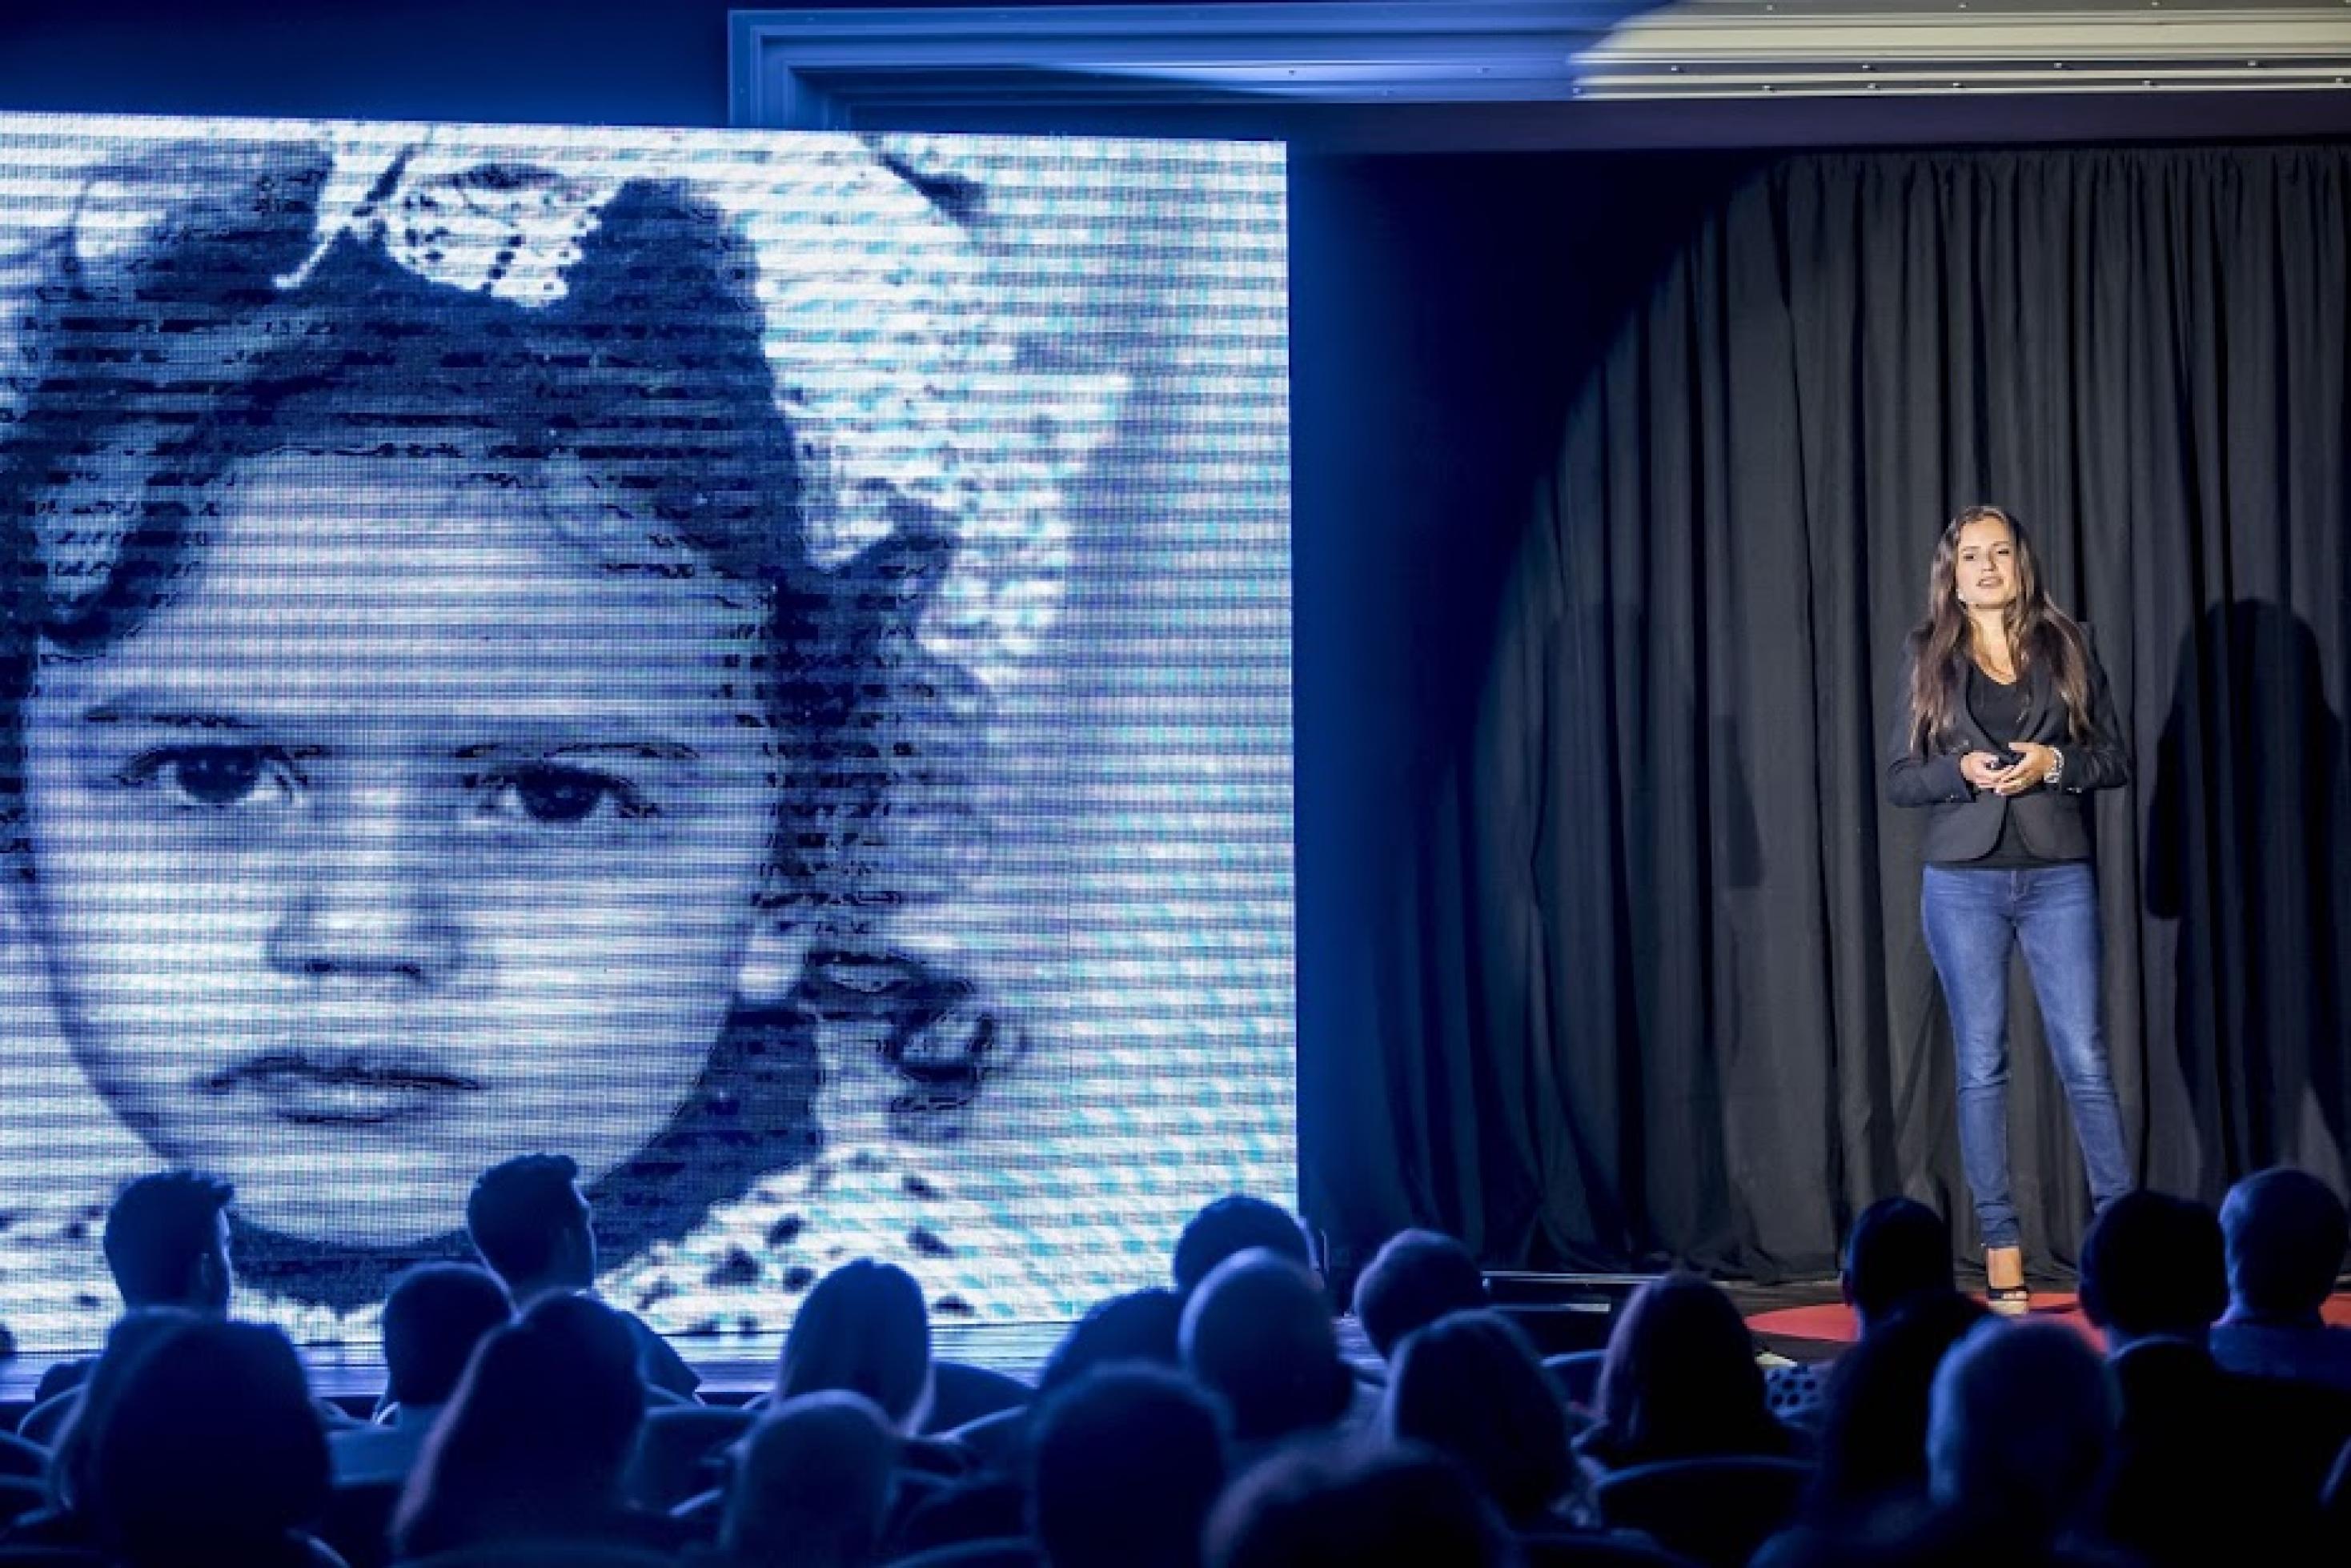 Inna Braverman überlebte als Baby Tschernobyl. Ihr wiedergeschenktes Leben möchte sie besonders gut nutzen. Ihre Geschichte nutzt sie auch als Marketingtool für einen noch umstrittenen Bereich der Erneuerbaren Energie. Hier bei einem Ted Talk.